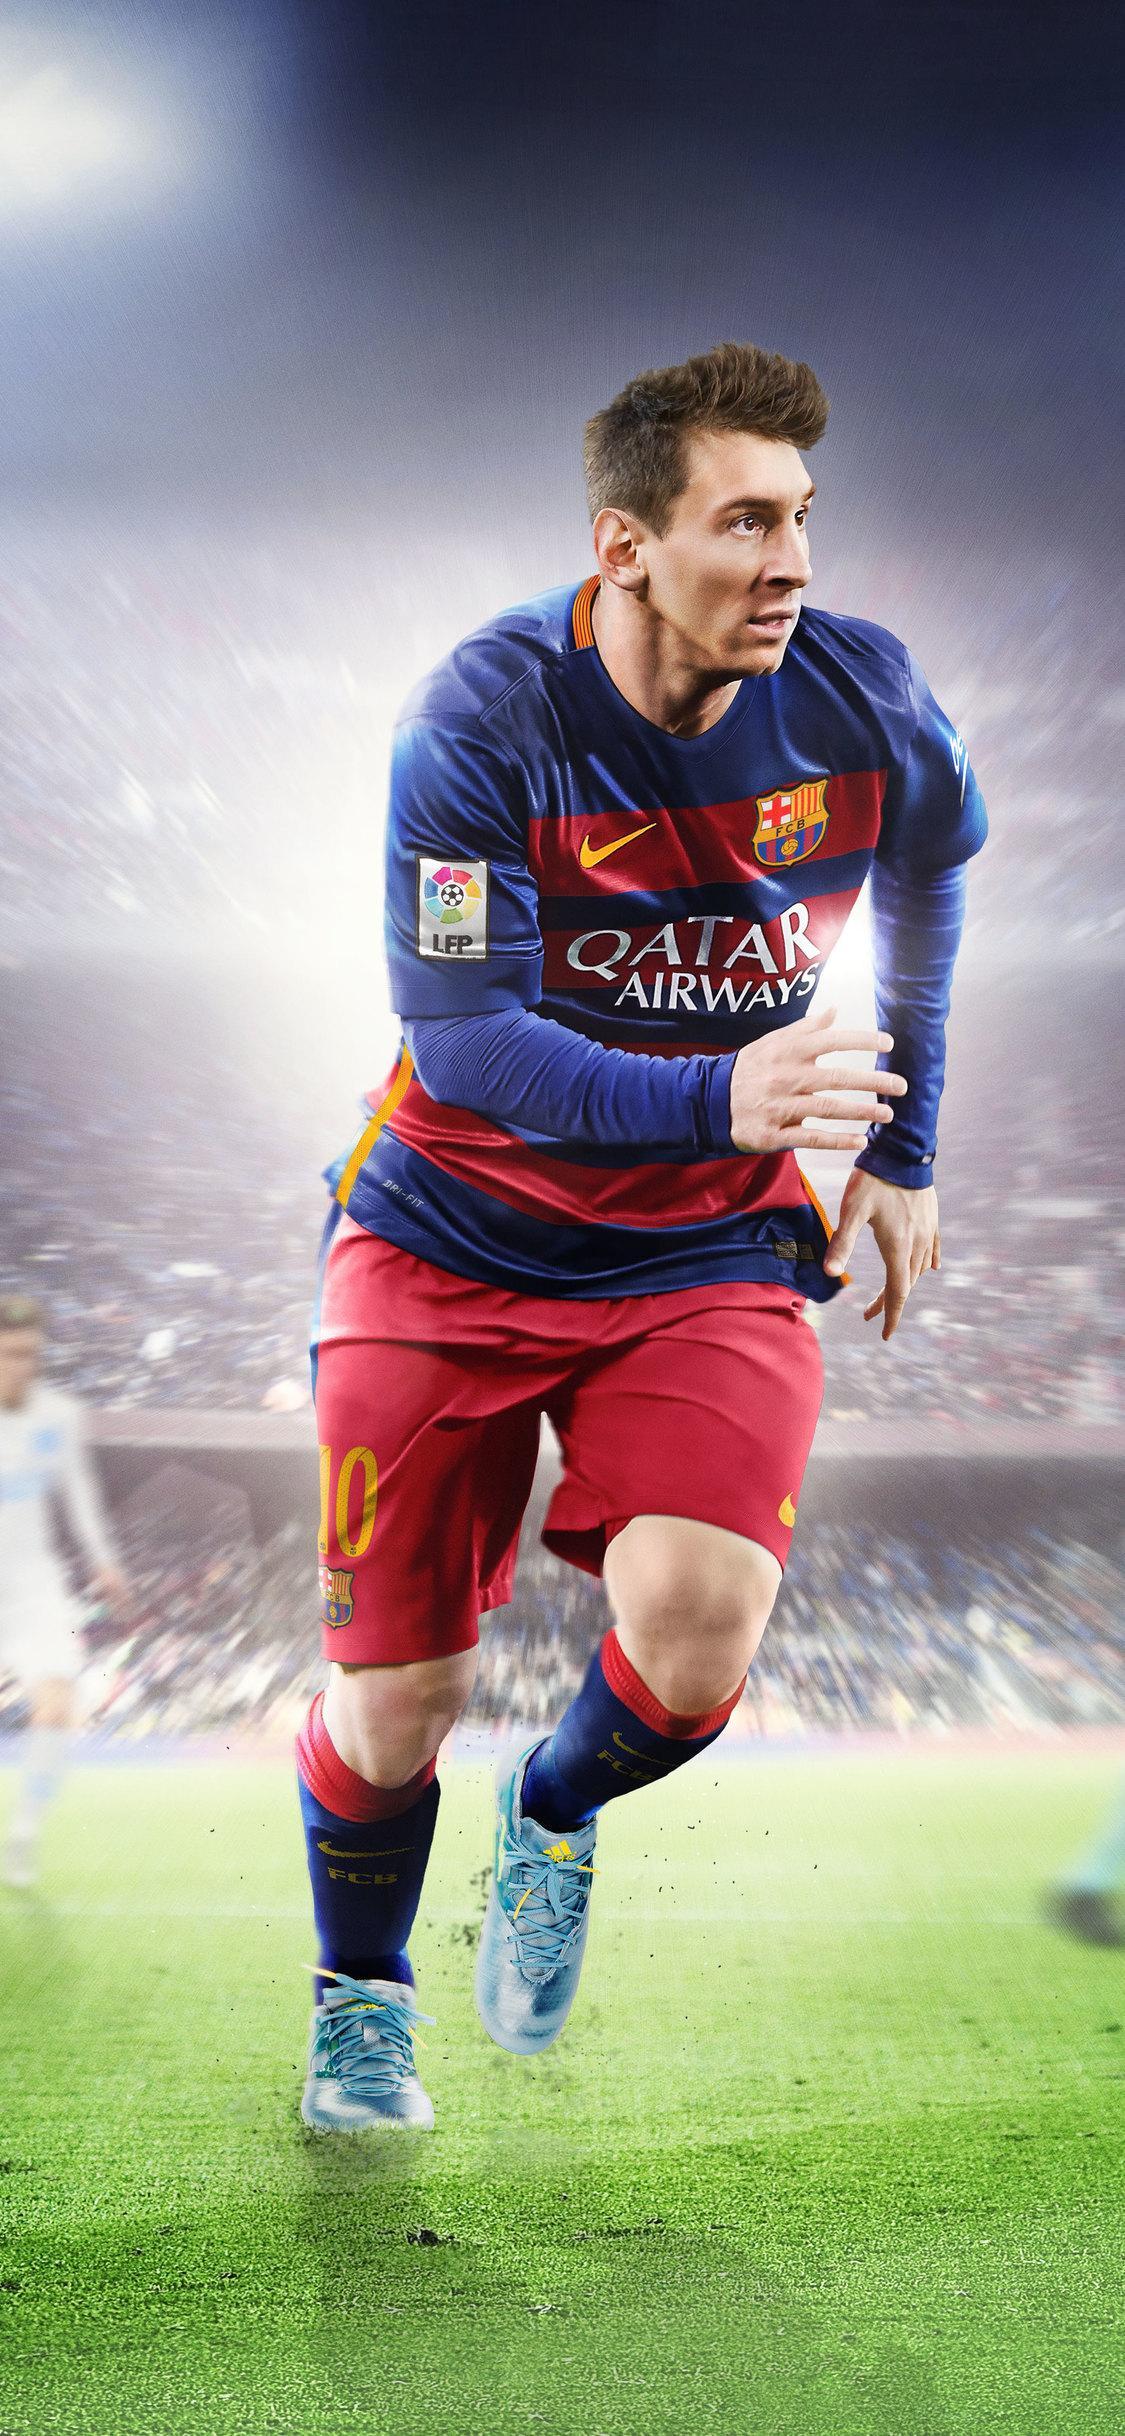 Với hình nền 8K về Messi, còn gì tuyệt hơn khi bạn có thể ngắm nhìn chân sút này với độ phân giải cực cao. Hãy nhanh tay tải về để trải nghiệm những hình ảnh chân thật như mọi khi bạn ngắm nhìn về Messi trên truyền hình.